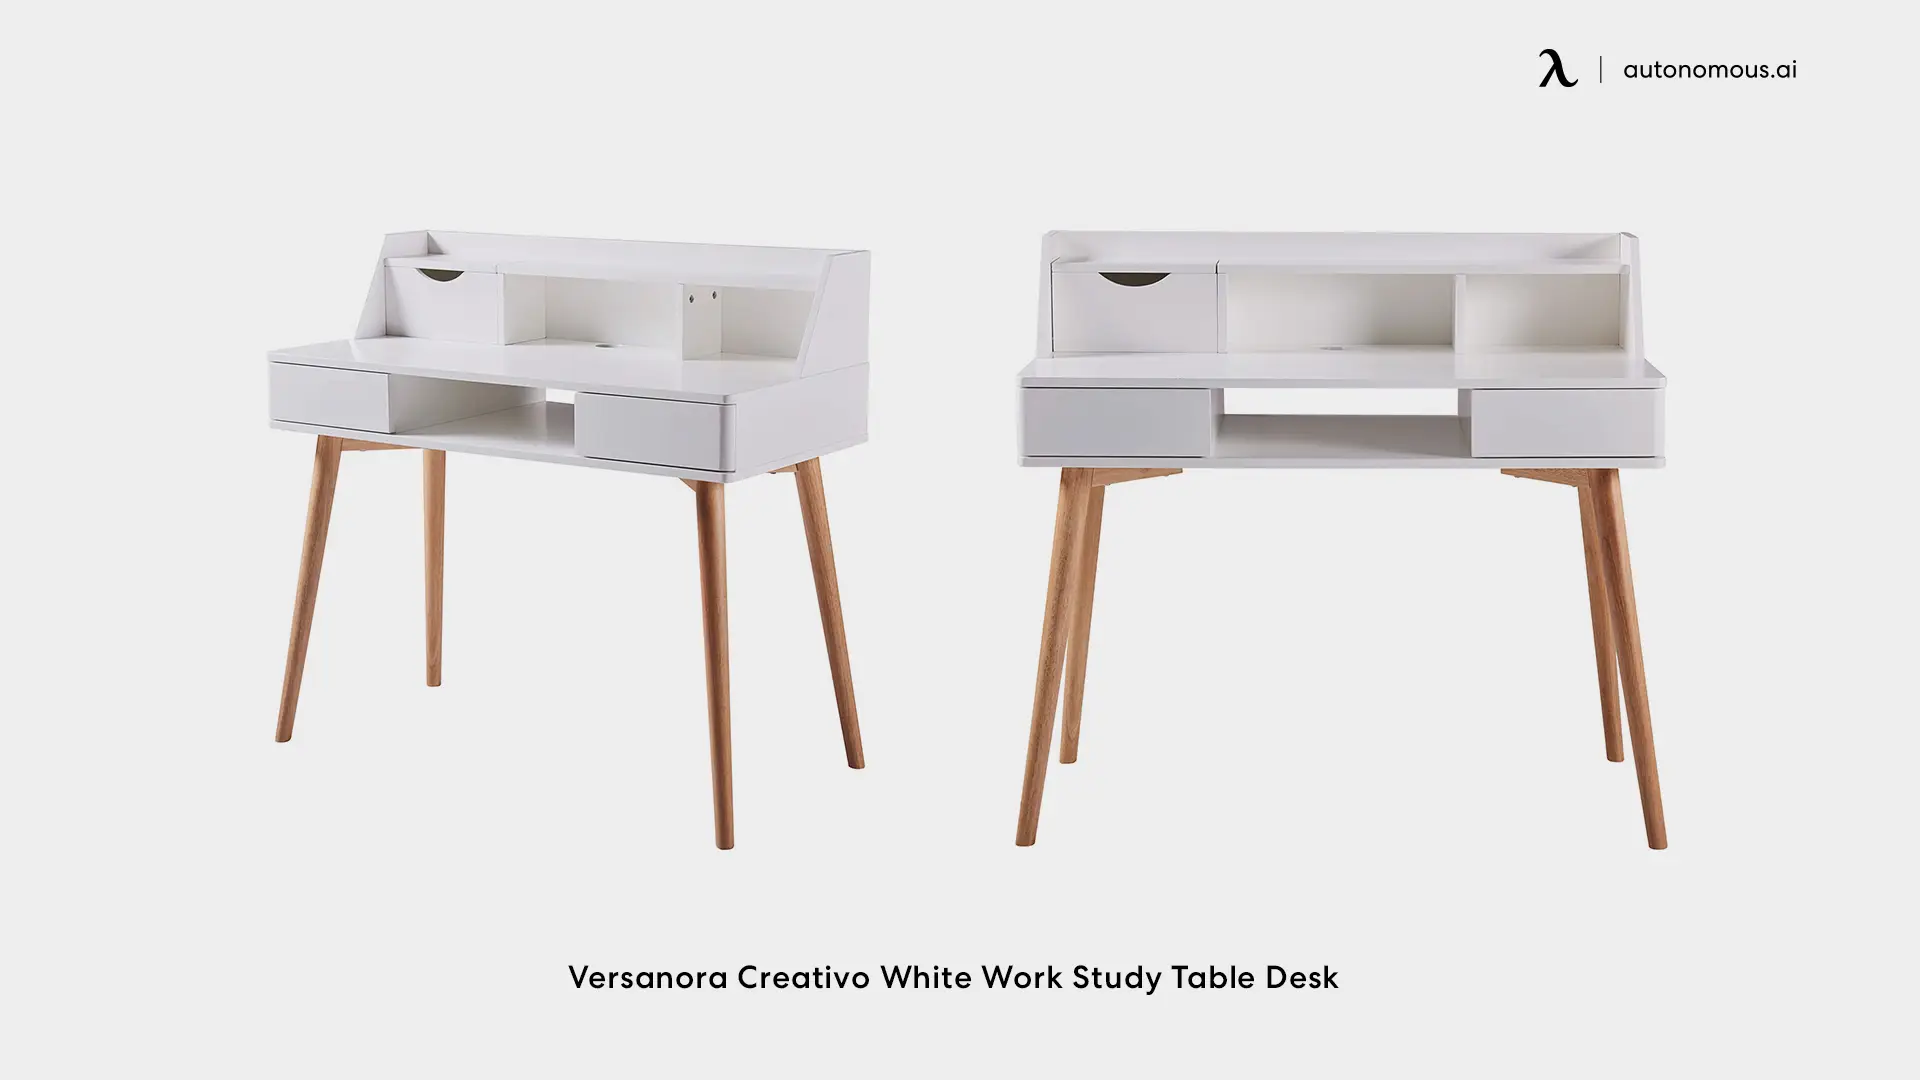 Versanora Creativo White Work Study Table Desk